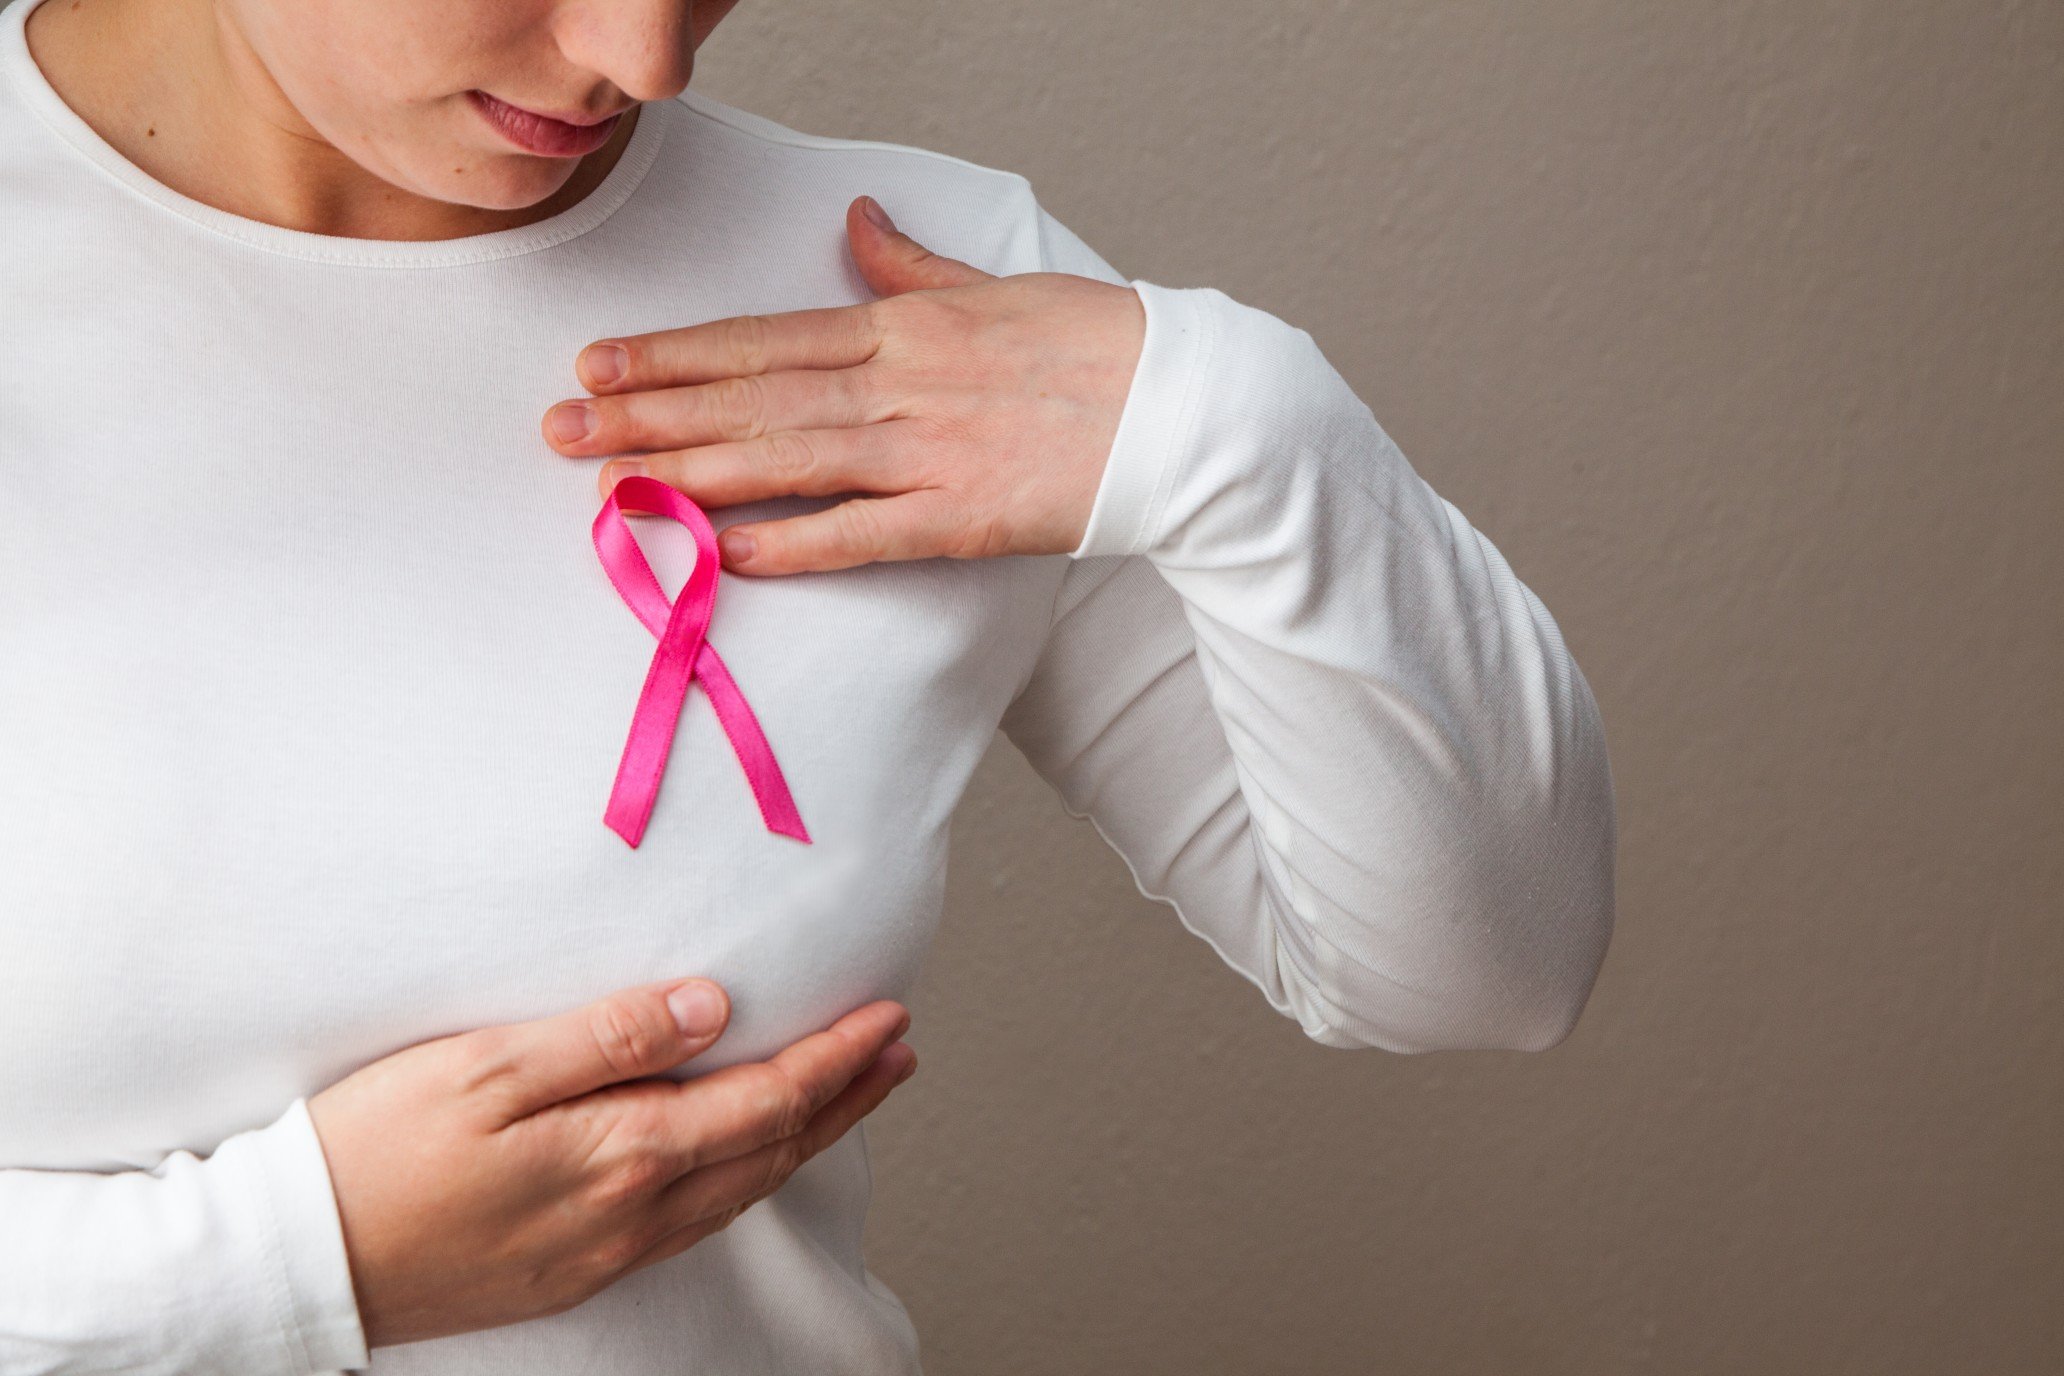 

Женщины Удмуртии смогут бесплатно пройти обследование на выявление рака груди

